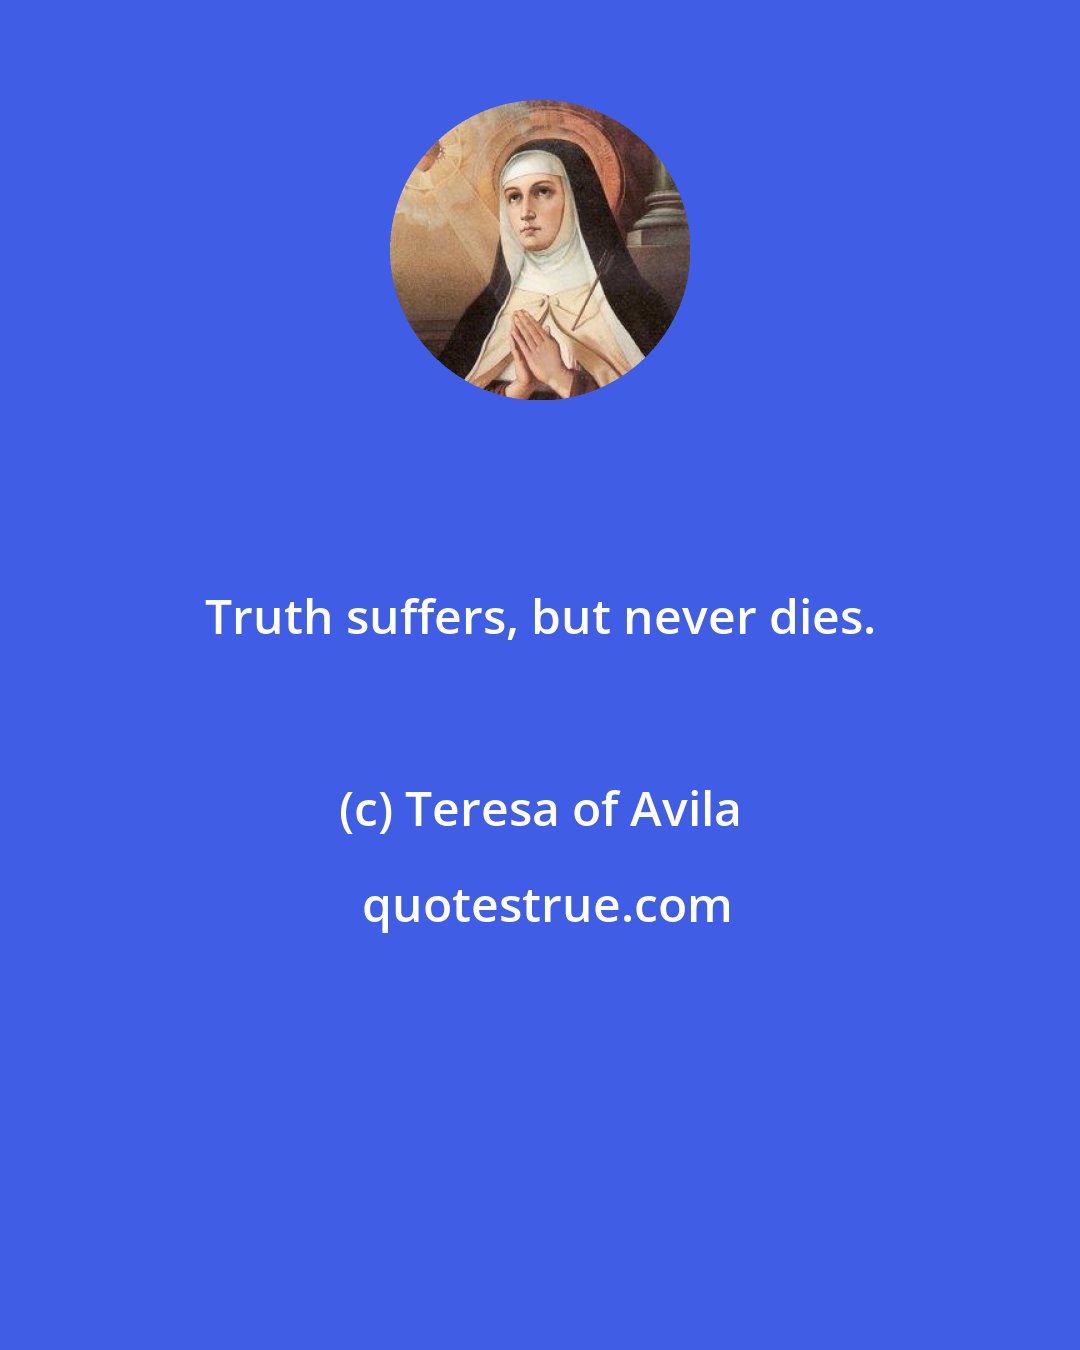 Teresa of Avila: Truth suffers, but never dies.